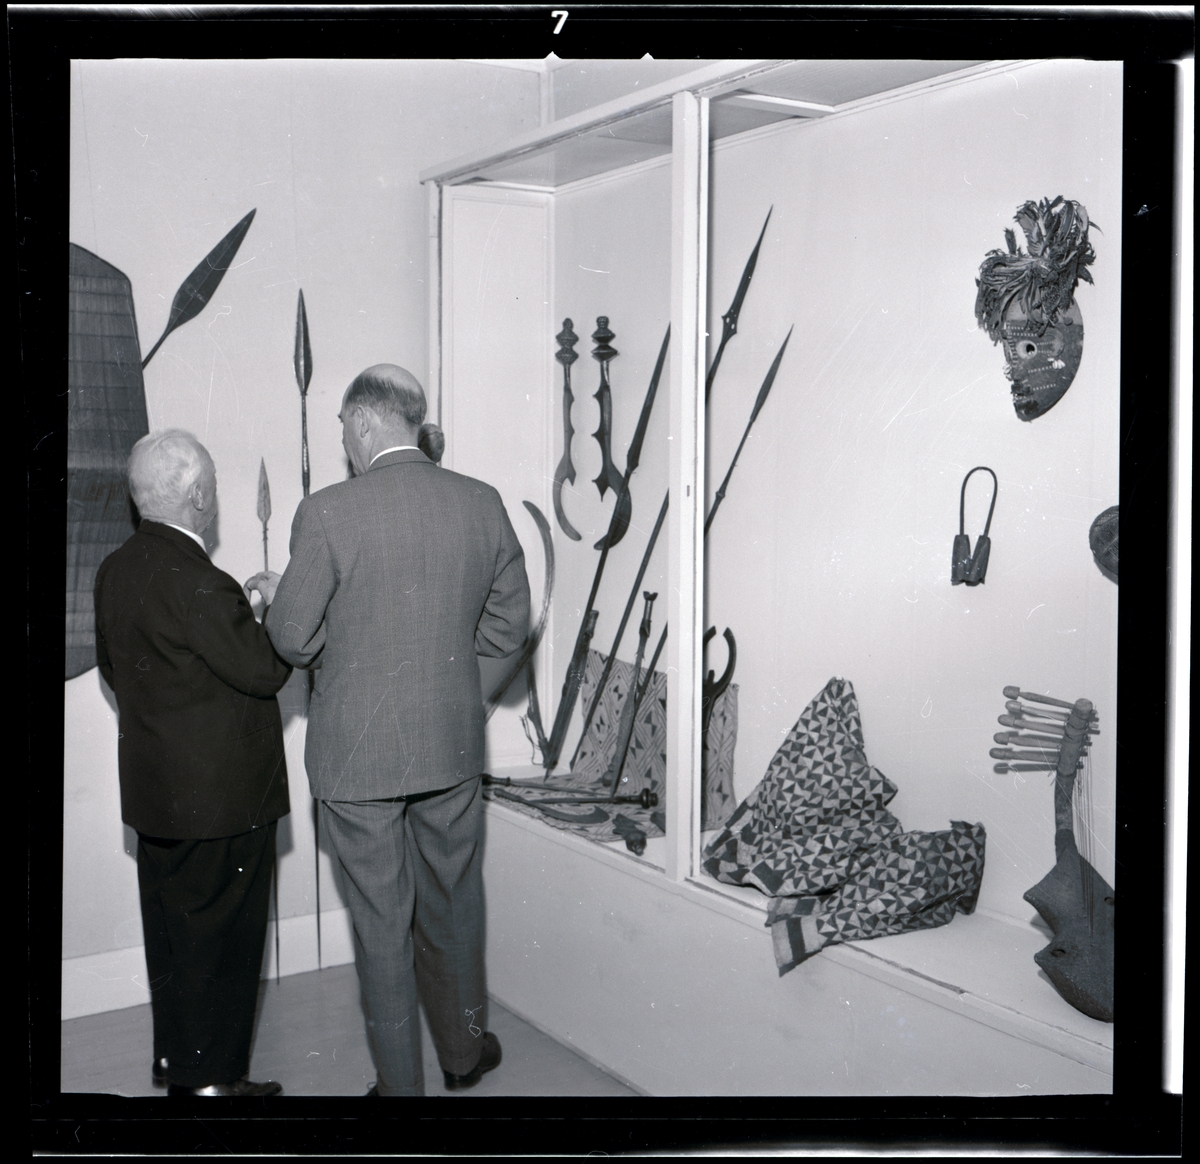 Text till webbutställning "Från när och fjärran" presenterad på Bohusläns museums hemsida år 2009:
Svärd, järnsmide med ciselerade ornament, handtaget av trä prytt med geometriskt mönster av mässingsnitar, längd 67,5 cm.
Gåva av sjökapten Elmer Göransson år 1961. 

Uppgifter om givaren
Under sin 30-åriga vistelse i Belgiska Kongo skötte Elmer Göransson (1872-1964) under många år transporter på landets floder. När han år 1932 avslutade sin tjänstgöring var han både skeppsfartygsinspektör för hela den belgiska flottan i övre Kongo, t. f. chef för hydrografiska tjänsten samt hamnkapten i Leopoldville.
Han var samlare av bl.a. vapen, textilier och träkärl. I omgångar från 1919 skänkte Göransson afrikanska föremål till Uddevalla museum. Han kom att bli en av museiföreningens hedersledamöter.
Vid sin bortgång 1964 var han bosatt i Kungsbacka.

Artikel i Bohusläningen från måndagen den 1 november 1937.
"Vittberesta bohusläningar berätta. Upplevelser under 30-årig vistelse i Belgiska Kongo. Kapten Elmer Göransson. Folk och sedvänjor under ekvatorns glödande sol."
_______________________________________________________________________

Kontinent: Afrika
Eneggad klinga, kraftigt svängd och på ryggen försedd med utskott; bladet rikt mönstrat med graverad dekor. Fästet virat med järnband; träskaftet består av två vulster och som avslutning en knoppform, trädelen prydd med kupolformade mässingsnubb. 
Bangala (möjl. Bobangi).

Litteratur:
"Naturfolkens Lif", populär etnografi skriven av W. Dreyer, översätt av D:r J. F. Nyström, Expeditionen af Ljus, Stockholm 1899.
Fig. 154 Afrikansk masugn till järnmalmens utsmältning
Fig. 156 Afrikanska smeder
Fig. 170 Krigskanot på Kongofloden
Fig. 171. Afrättning i en negerby vid Kongofloden.

W. Dreyer skriver i den svenska översättingen av boken "Naturfolkens Lif," från 1899: Men framför alla andra handtverk är smideskonsten utvecklad, och smederna bilda en klass, ja, nästan en kast för sig; deras barn få lära sig yrket från det de äro små. Nästan öfverallt finnes järnmalm i jorden och negrerna utsmälta själfva järnet ur den. De uppföra en smältugn af lera, i regeln blott liten och enkel, ibland dock ett par meter eller mera hög och fullkomligare inredd. Den fylles med omväxlande lager af träkol och malm; elden tändes nedtill och då man sörjt för drag försiggår förbränningen raskt. Det utsmälta järnet samlas i en fördjupning på botten och uttages till vidare bearbetning.
Smedens redskap äro få och enkla: en större sten till städ, en mindre till hammare, som föres i handen, en dubbel blåsbälg af getskinn, hvilken sen medhjälpare håller i gång genom att omväxlande sammantrycka och utvidga hvar avdelning för sig; det är allt.
Med dessa tarfliga redskap förstår han dock att smida härliga vapen, spjut, yxor o.s.v., hackor till jordbruket, ringar till smycken, bjällror och mycket annat. Metallens godhet är förvånande, den kan täfla med det bästa engelska järn, och tekniken är förbluffande. Vackert ciselerade sirater, inläggningar med koppar, genombrutna arbeten o.s.v. förstå dessa handtverkare, nästan konstnärer i sitt fack, att åstadkomma.

Uppgifter om E. Göransson i Knut Adrian Anderssons katalog samt historik om samlingen: Se UM61.03.001.